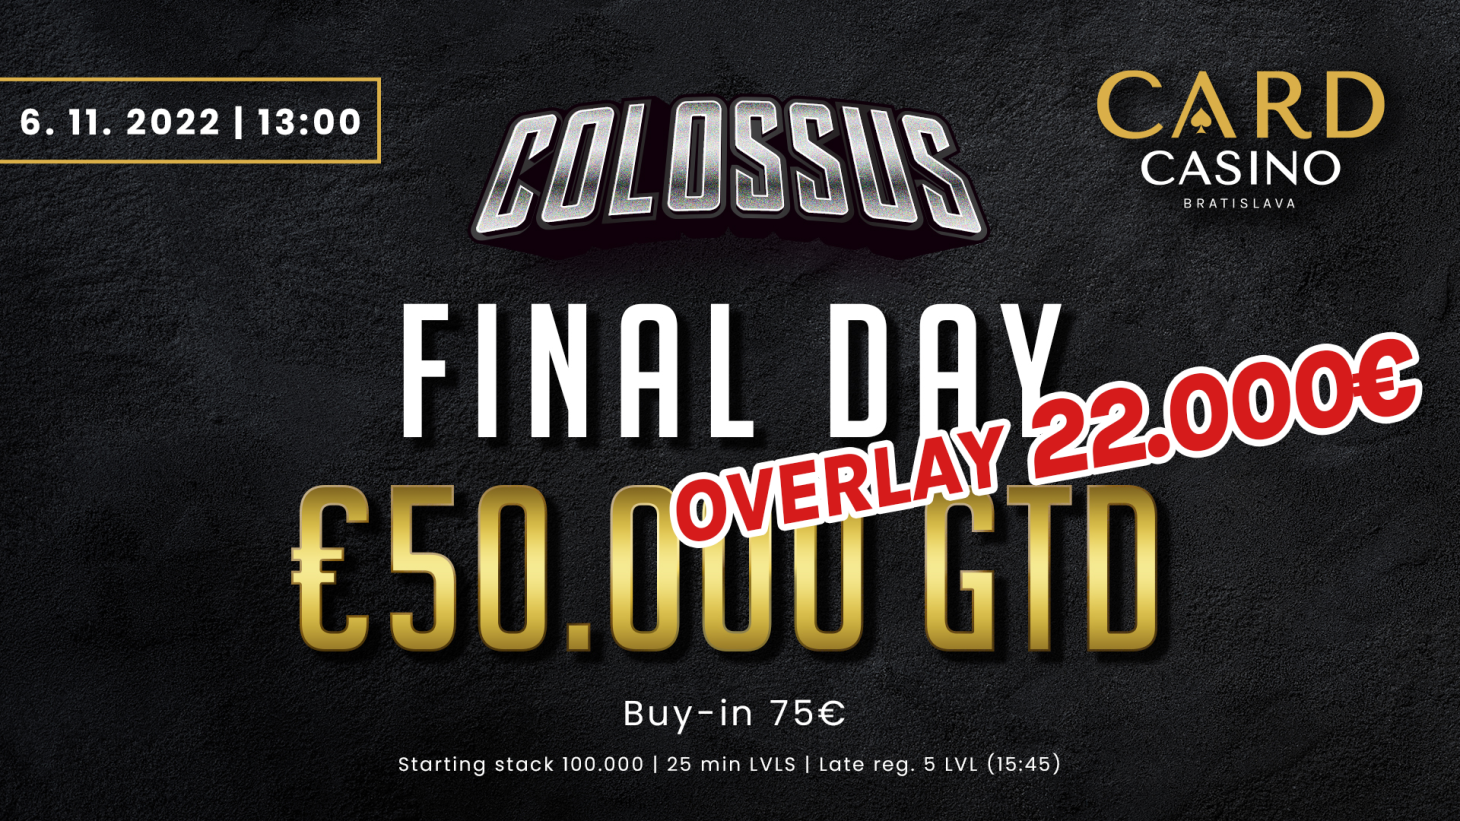 Mach dich bereit für Colossus mit €50.000 GTD und den Kampf um die WPT in Las Vegas